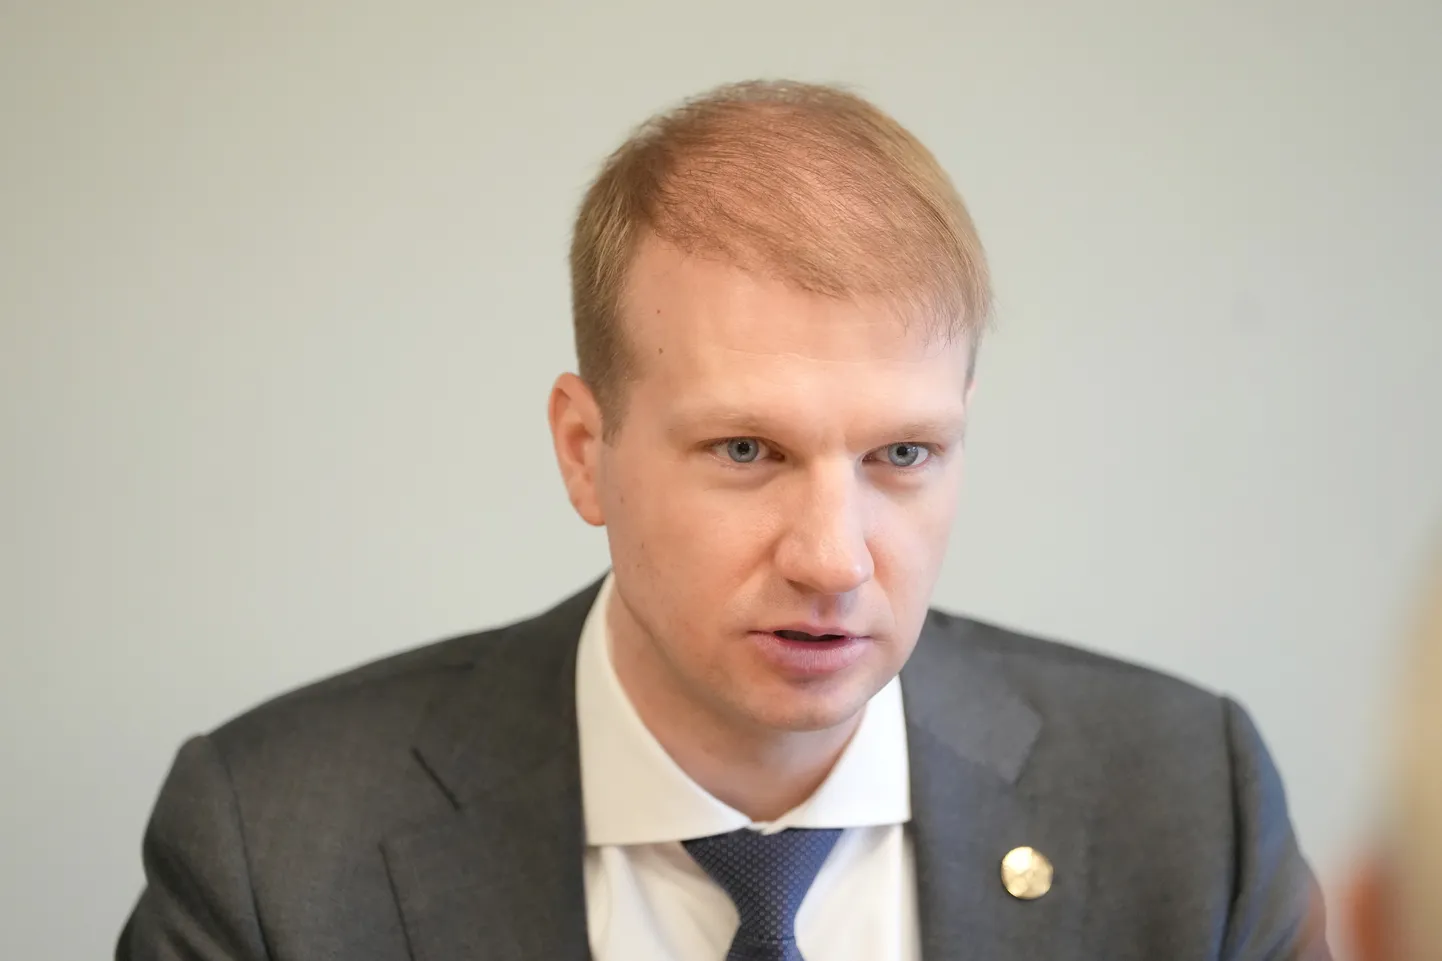 Klimata un enerģētikas ministrs Kaspars Melnis.